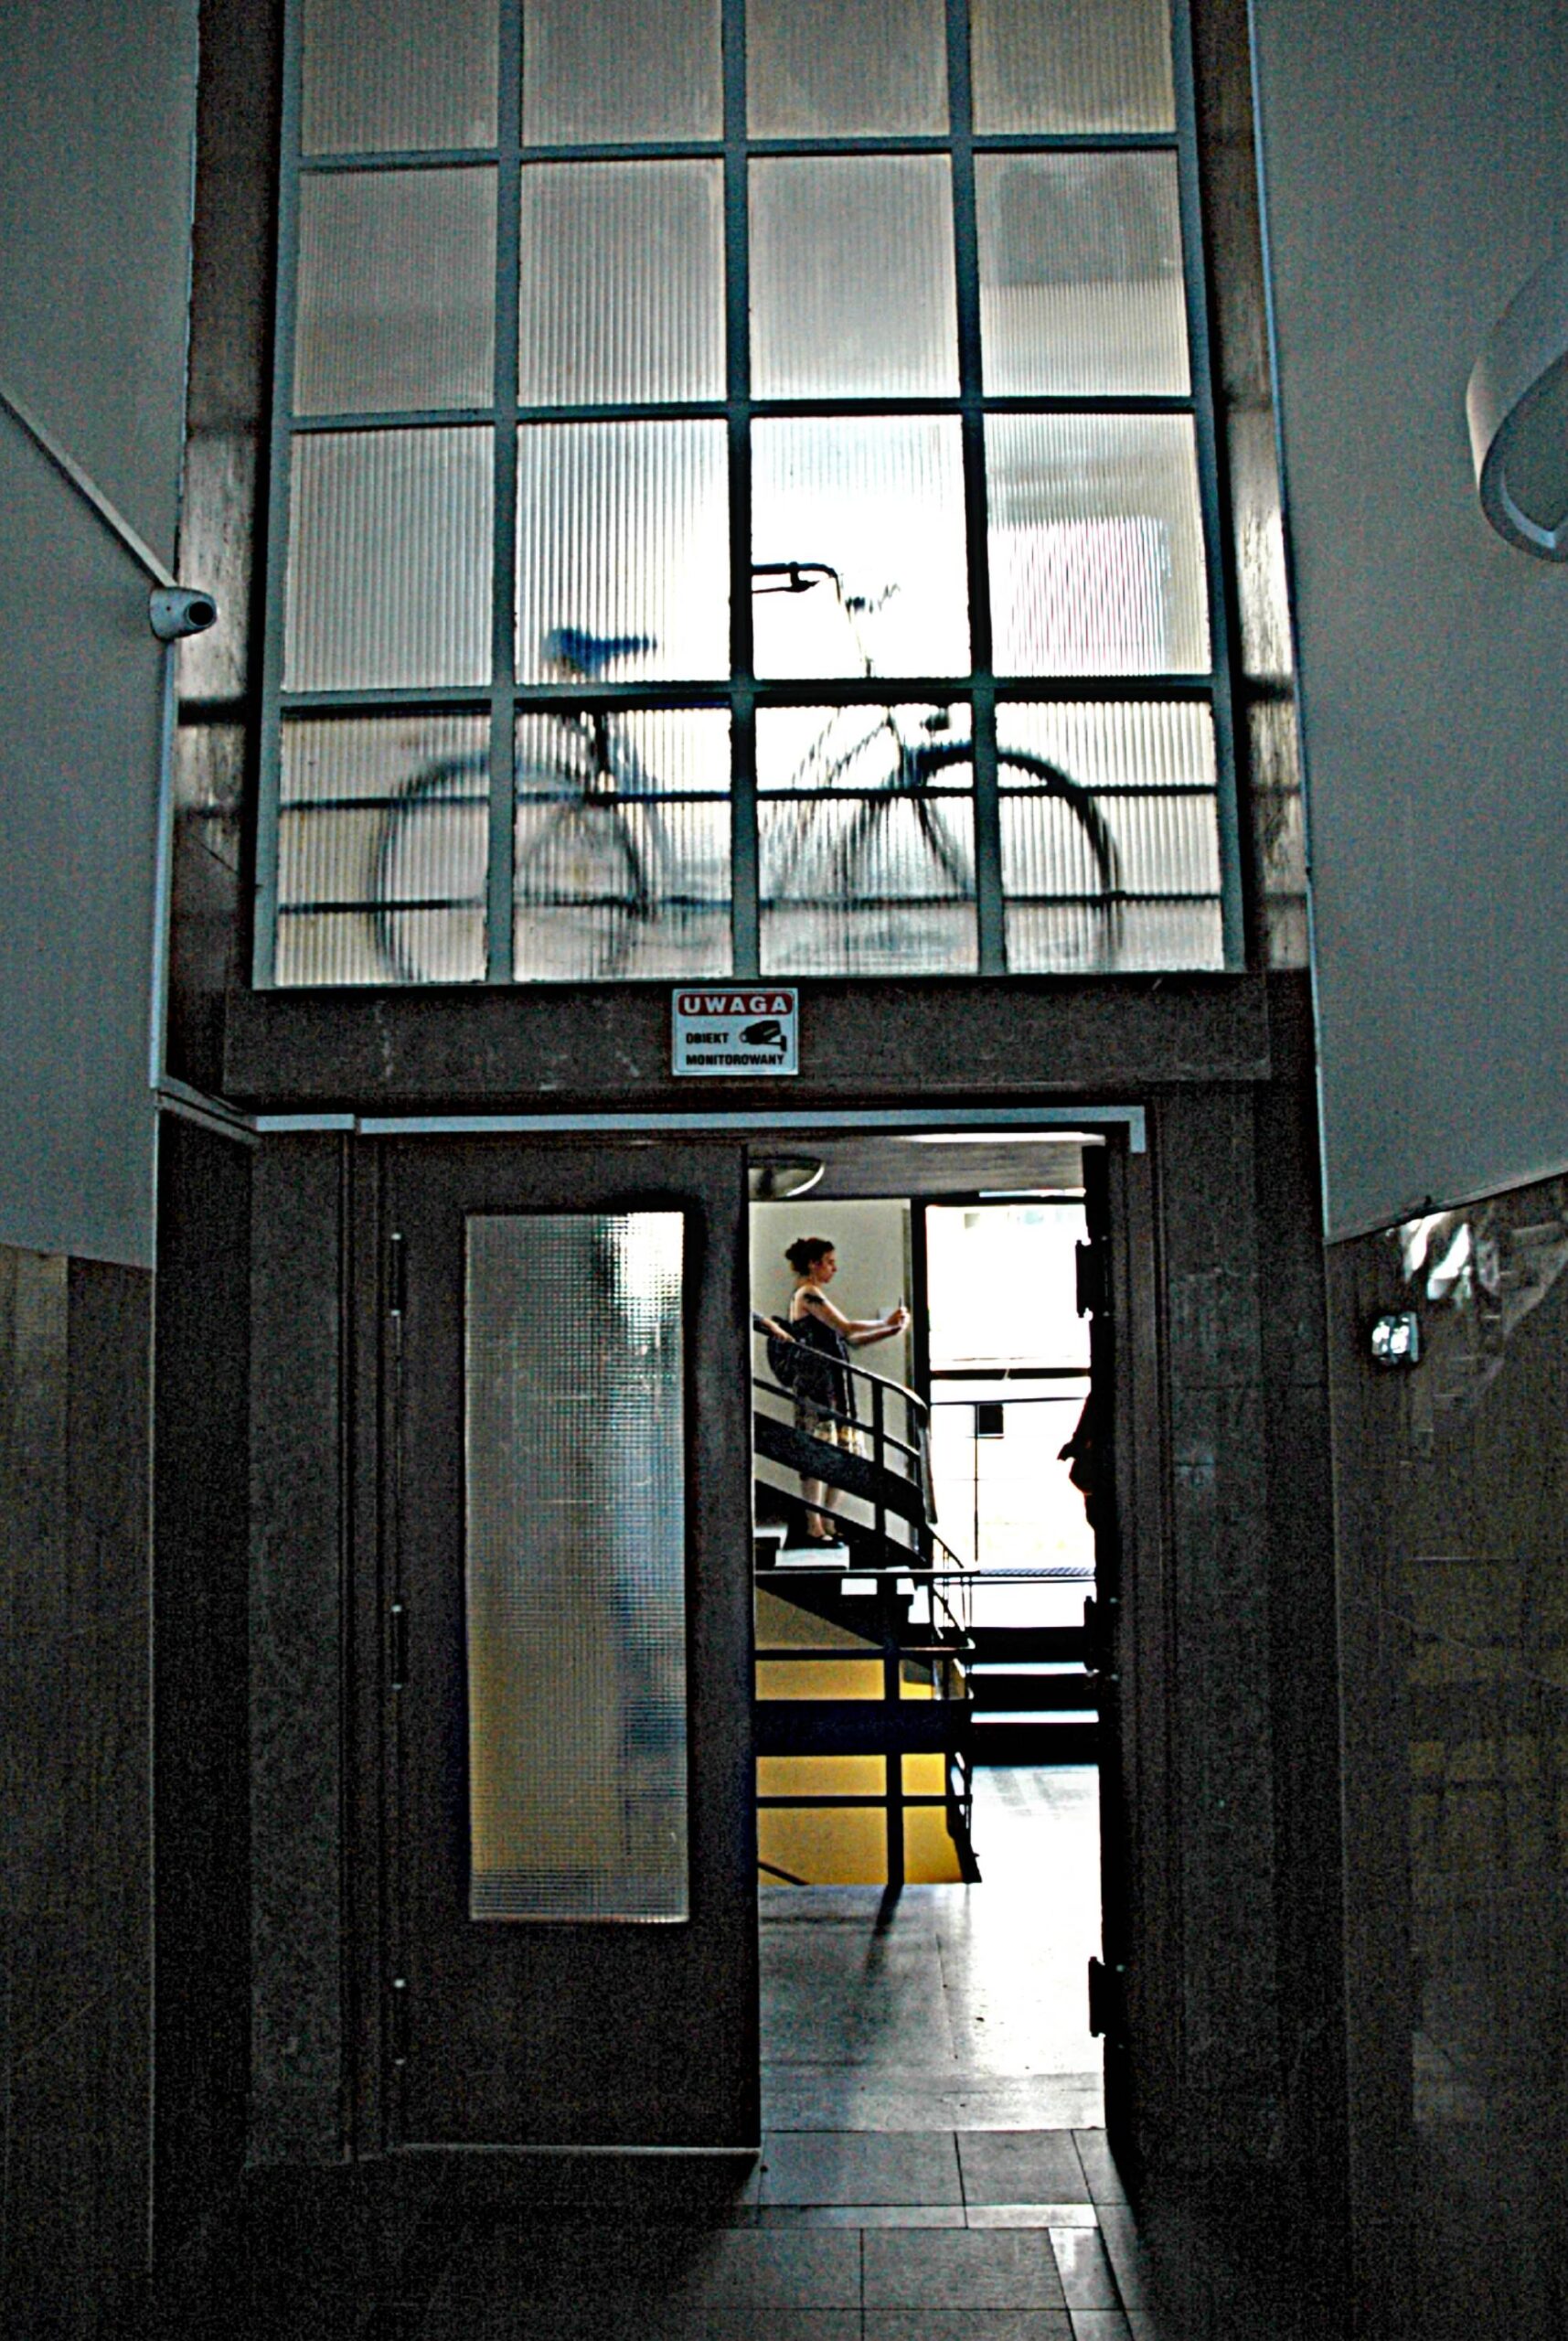 Drzwi pomiędzy hallem wejściowym a klatką schodową. Fot. Aleksandra Bocianowska 2022 r., źródło: AOD III.